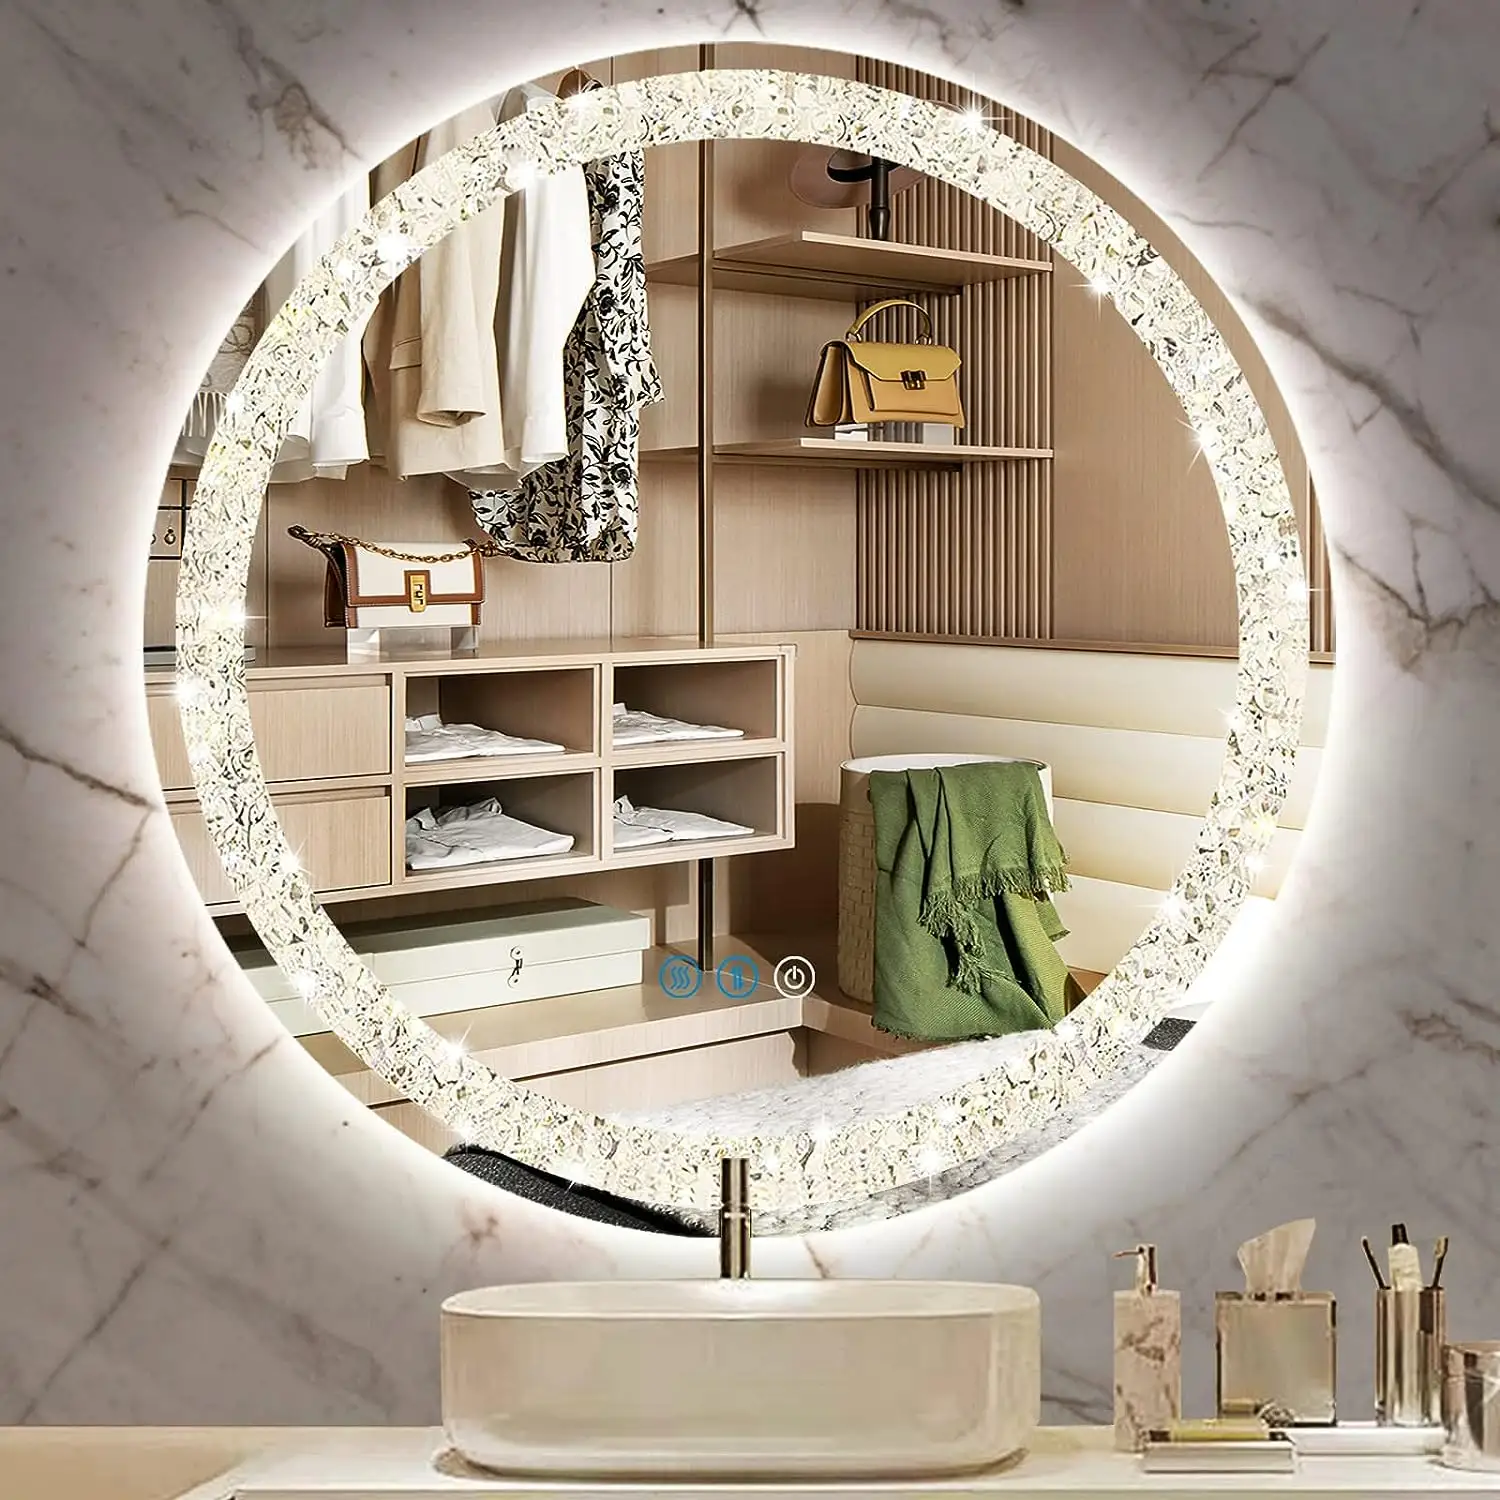 ホテルクリスタルミラー室内装飾クリスタル化粧鏡壁装飾LEDミラーバスルーム